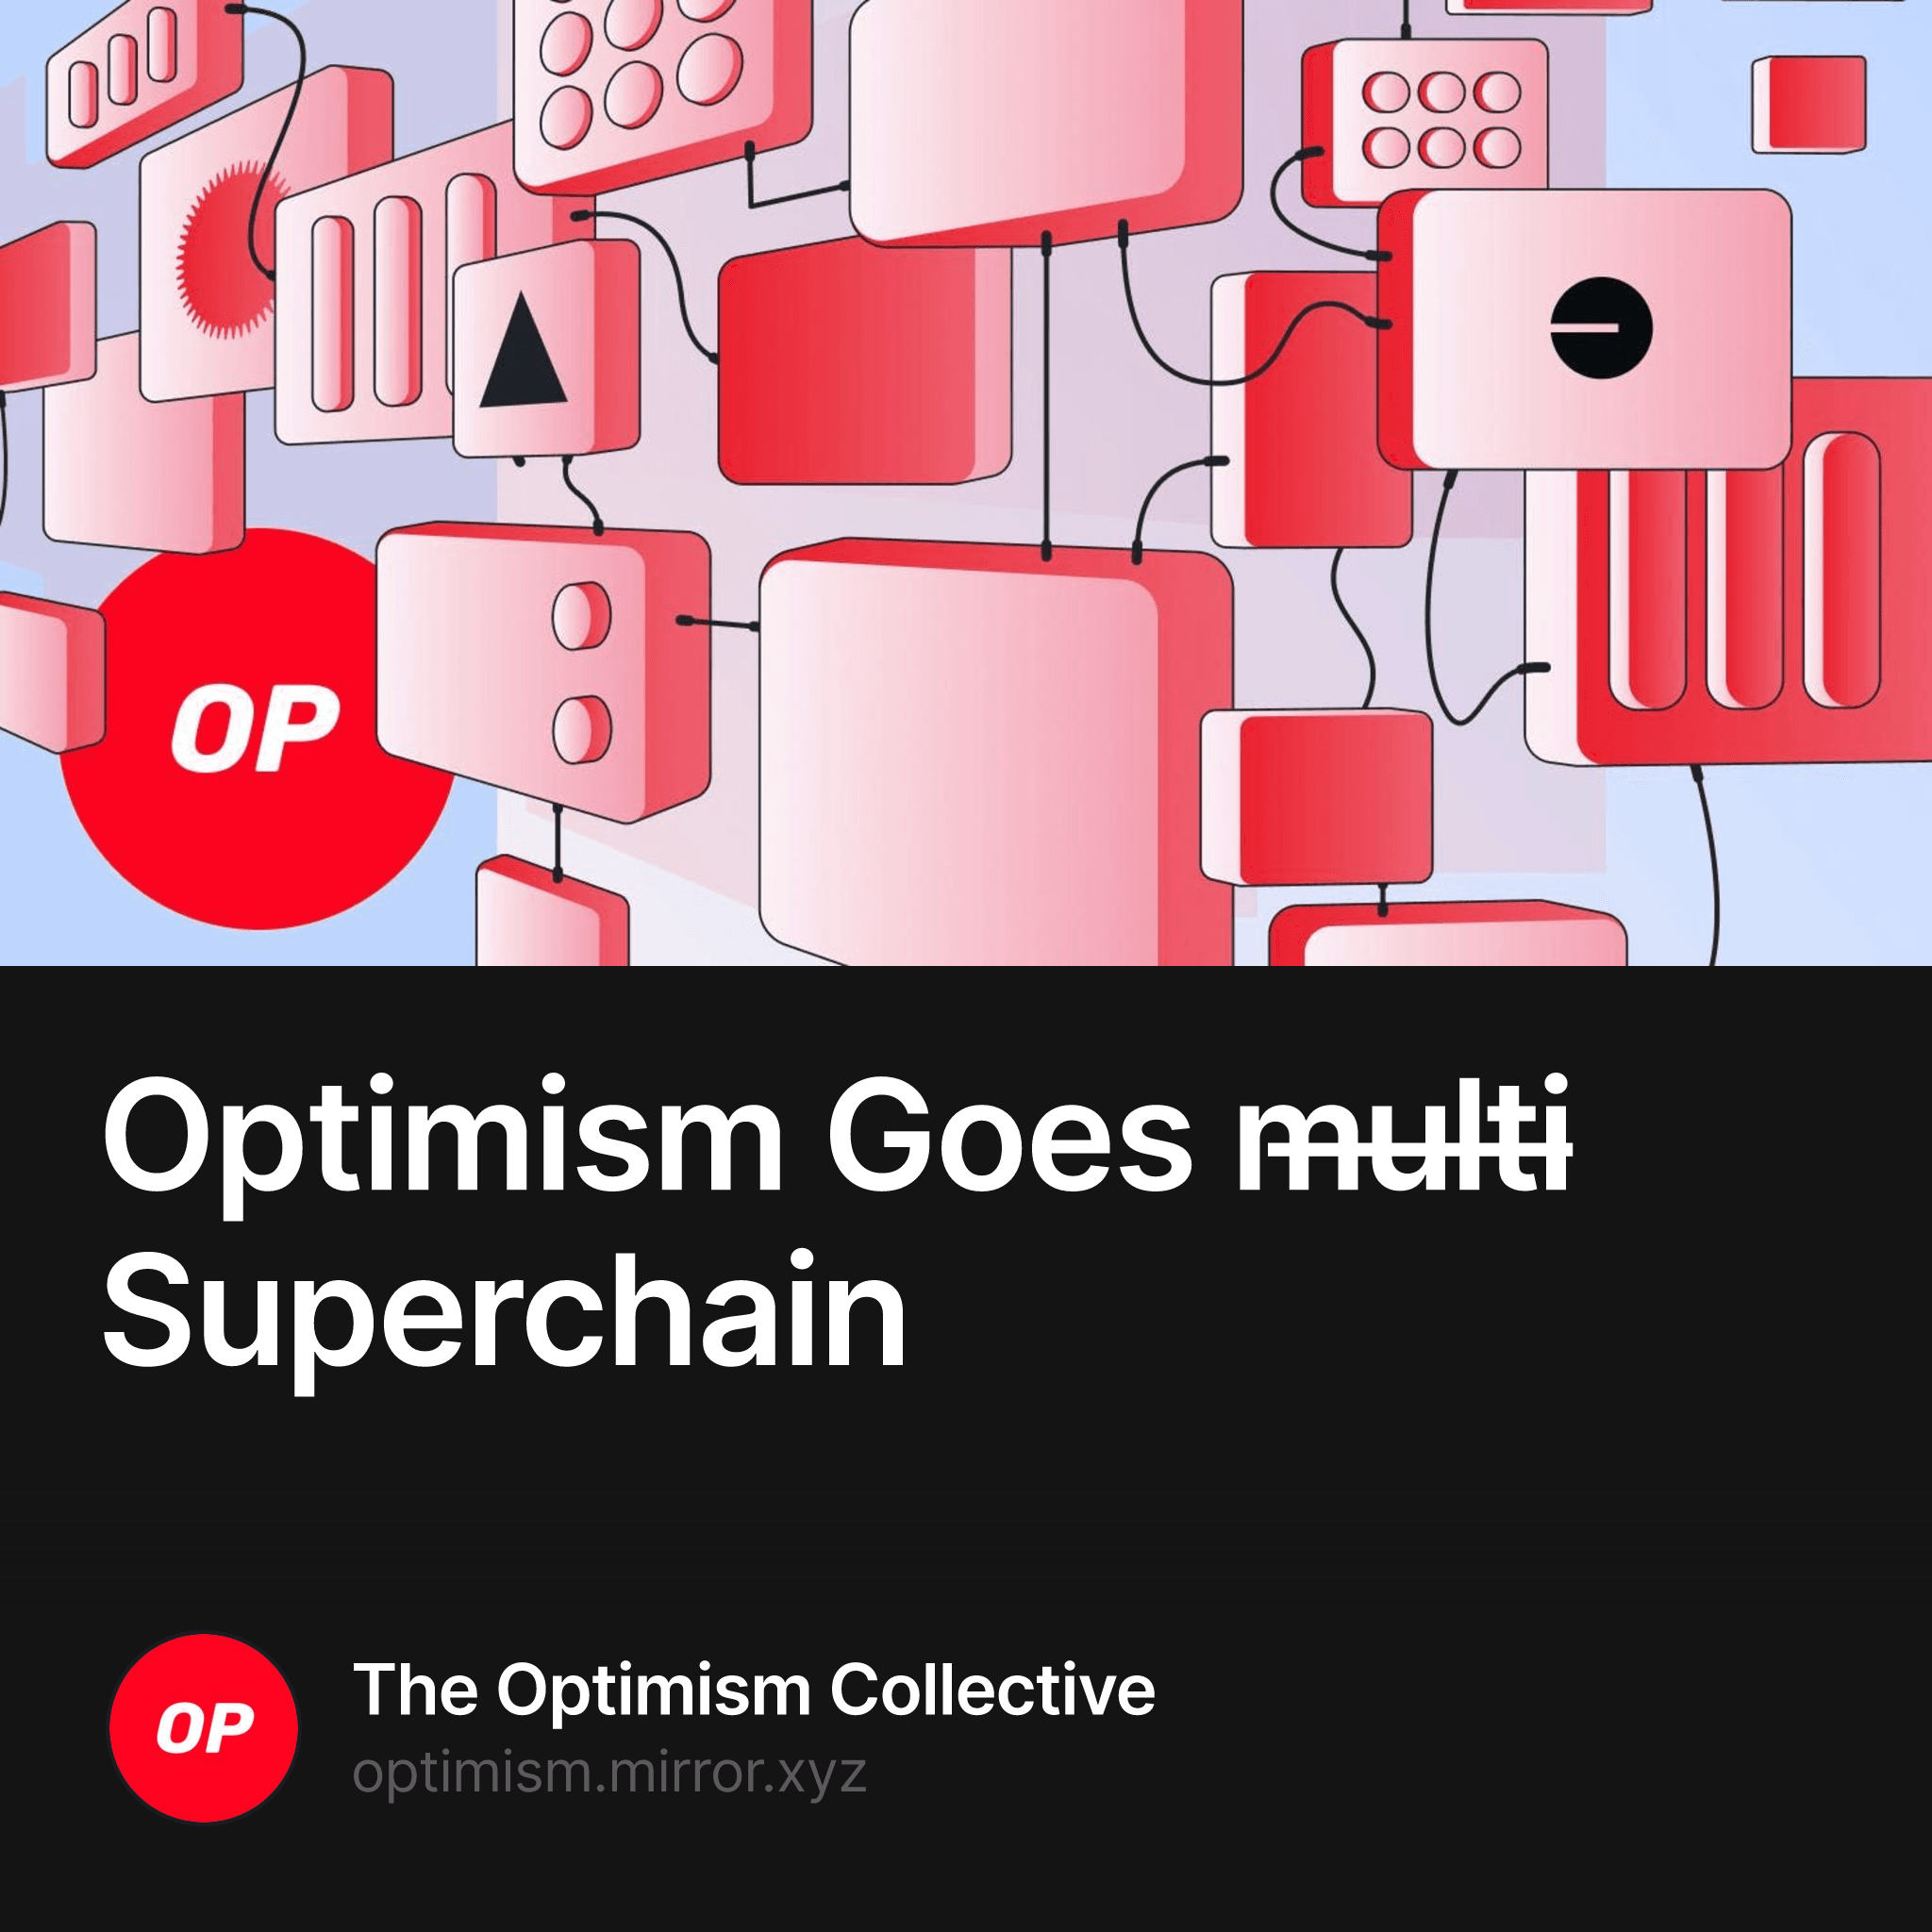 Optimism Goes m̶u̶l̶t̶i̶ Superchain 5702/10000